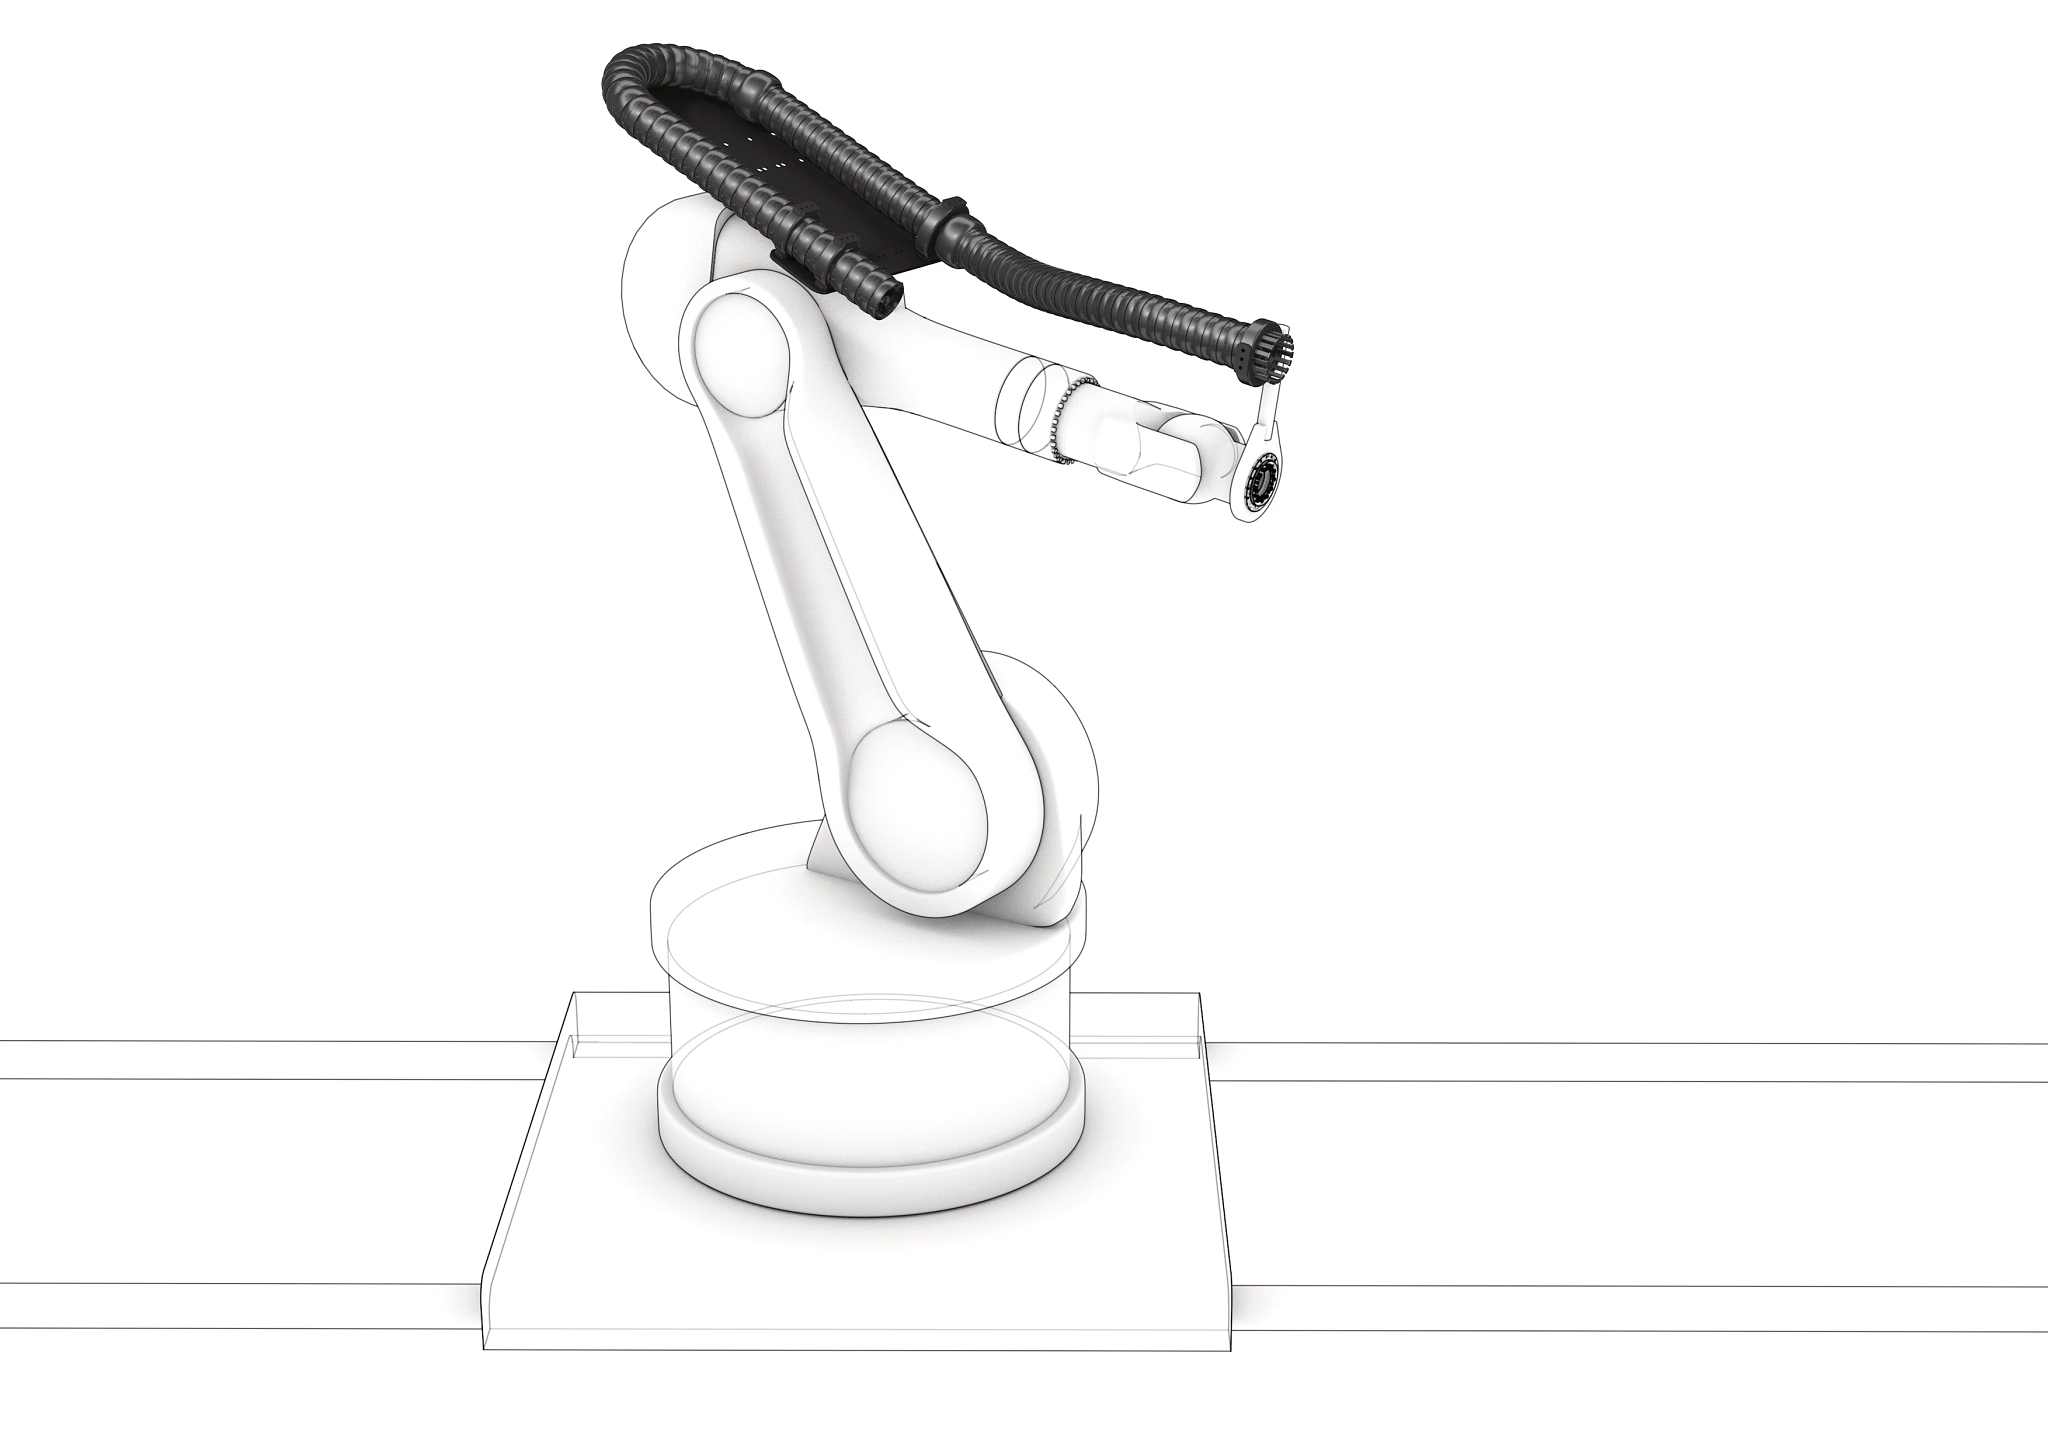 silueta robot con sistema de retracción y cadena portacables triflex